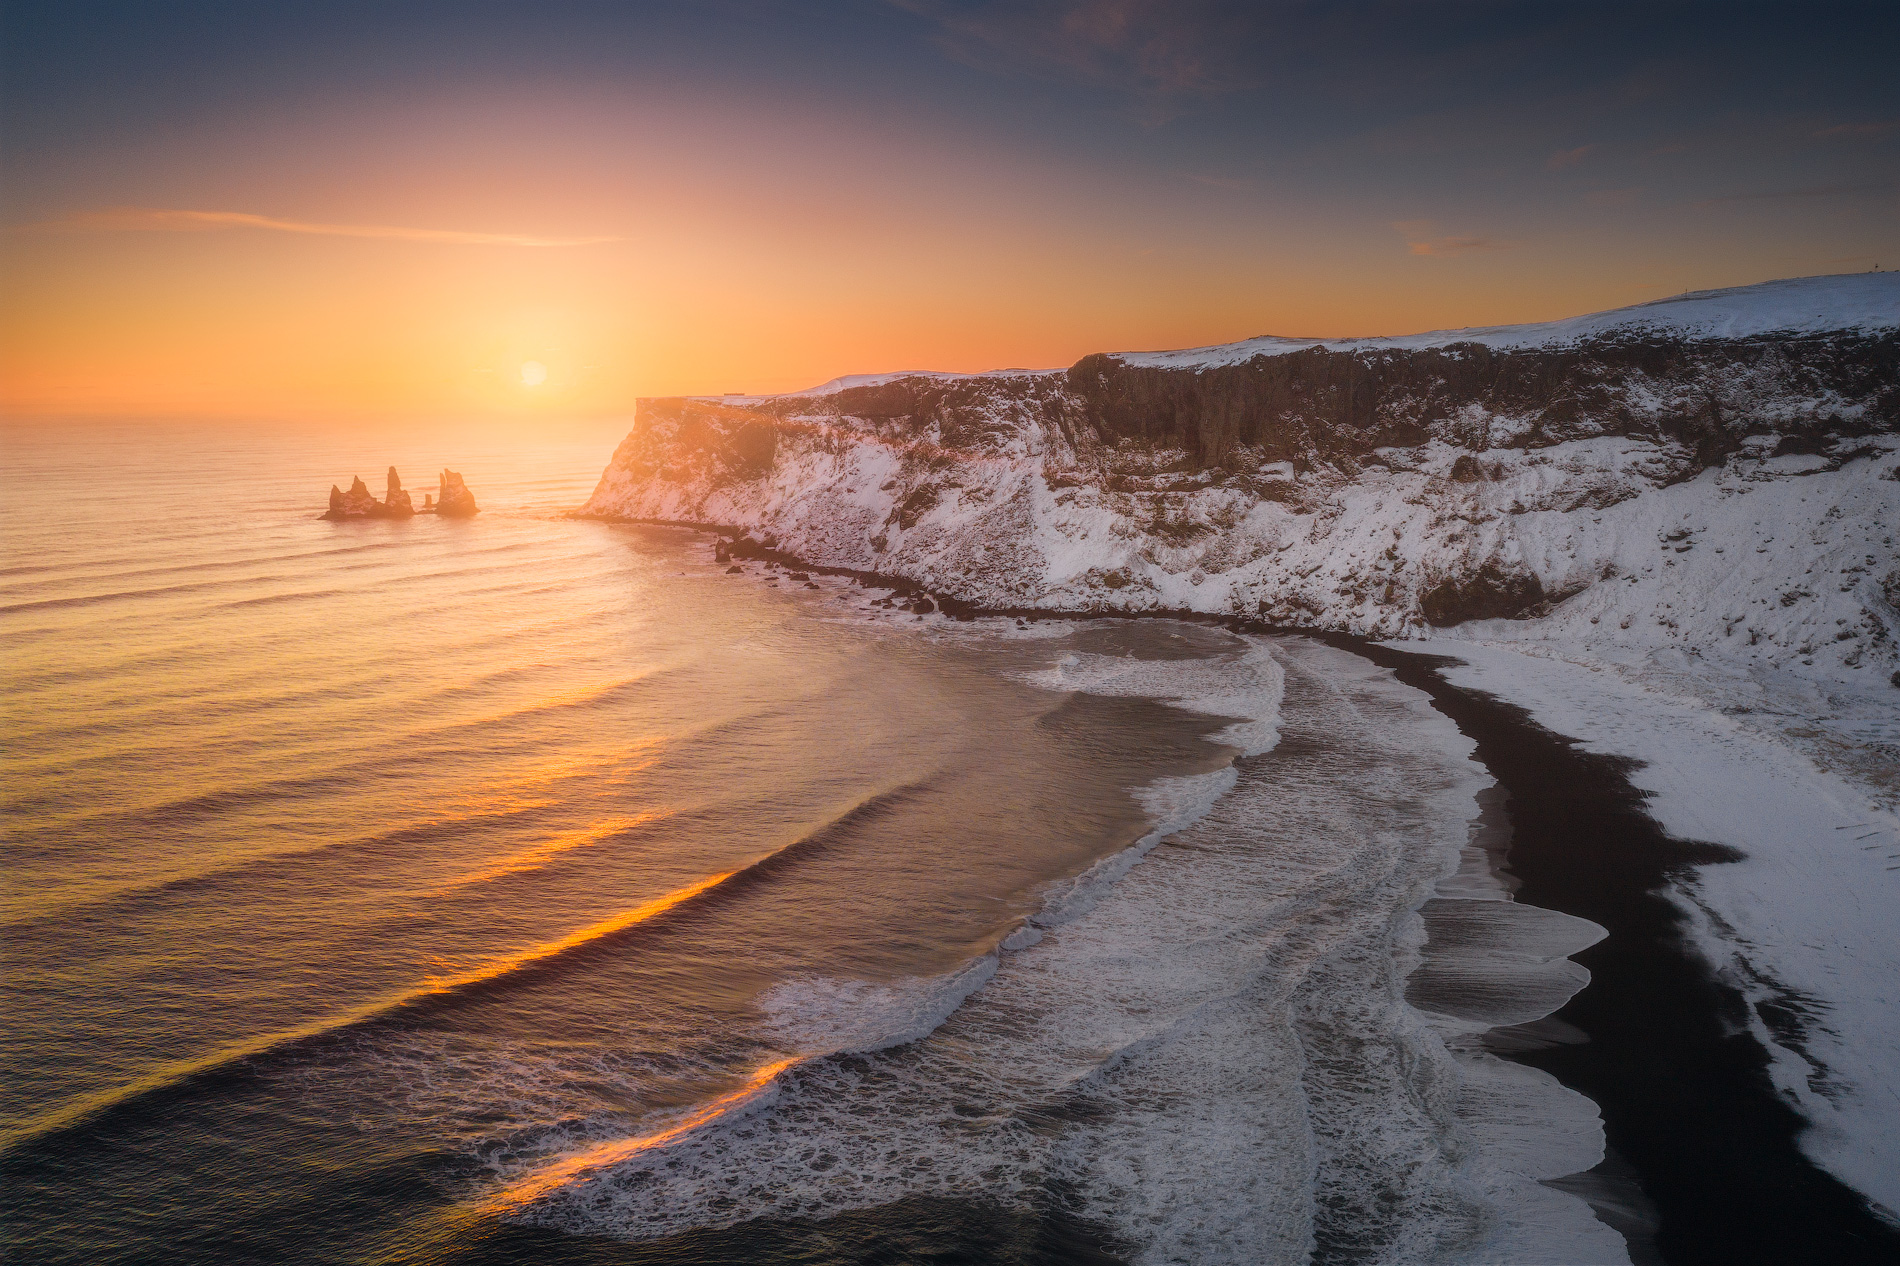 พระอาทิตย์ตกเหนือชายฝั่งทางใต้ที่สวยงามของไอซ์แลนด์.